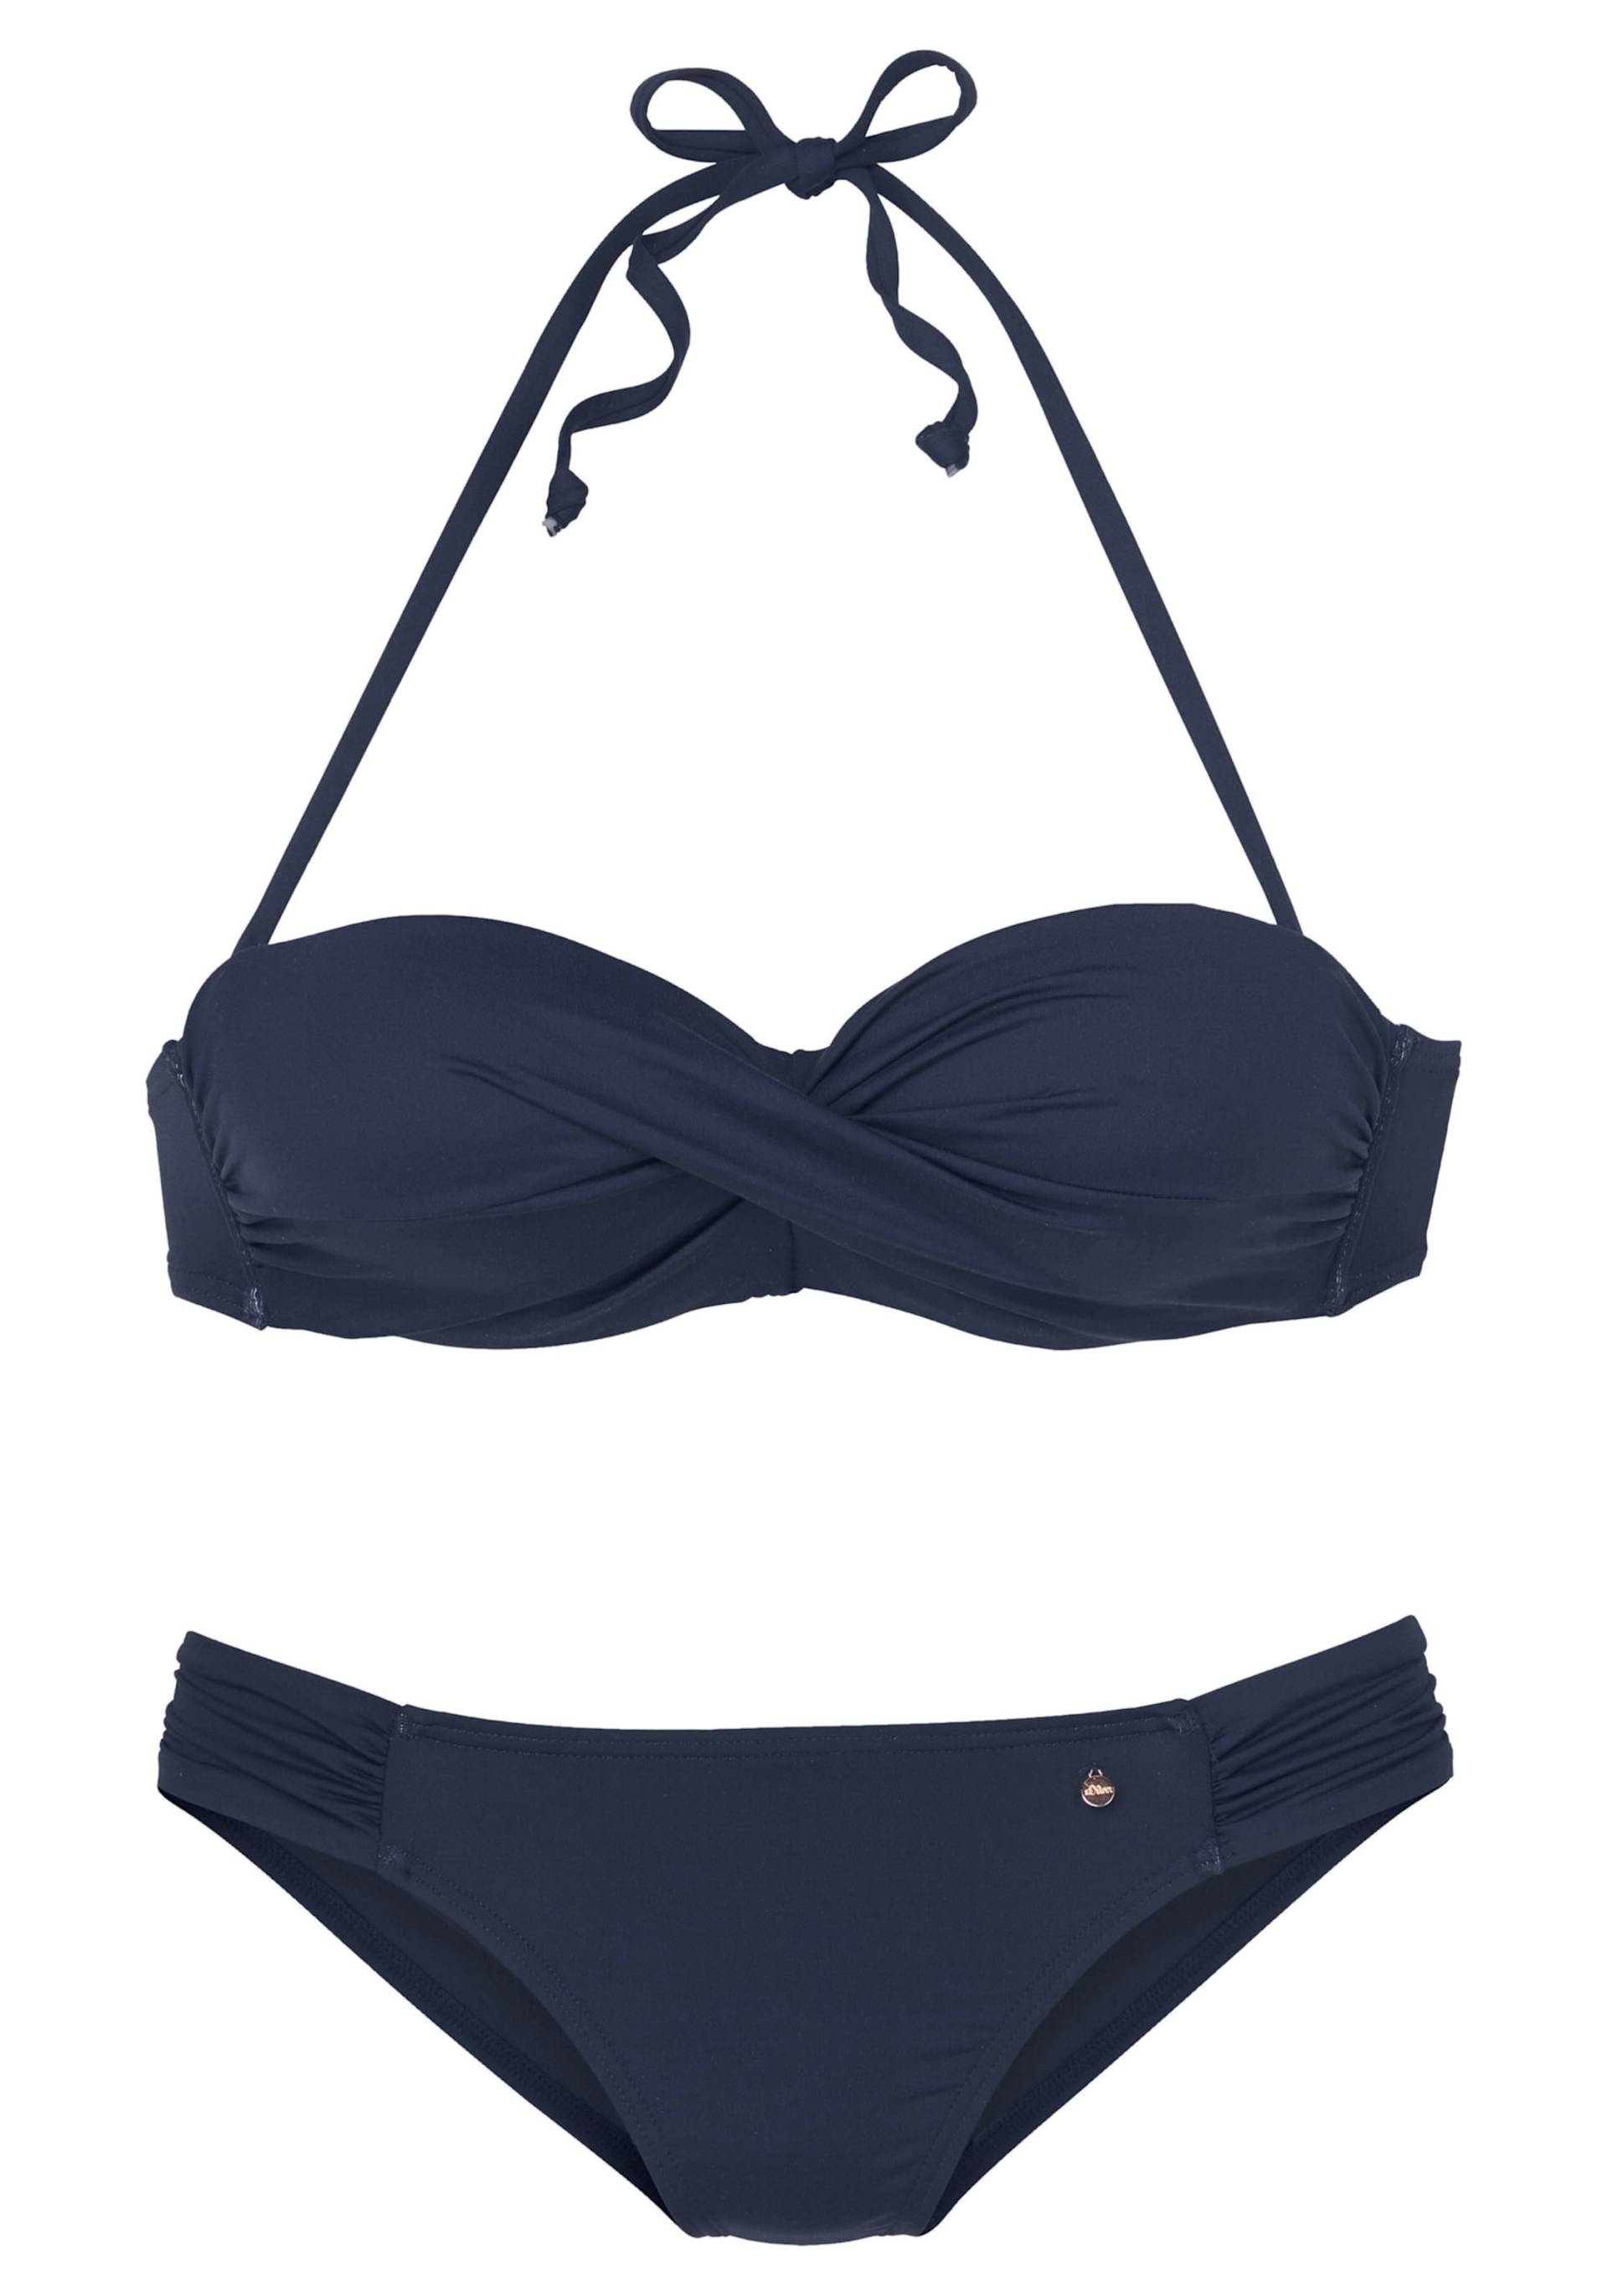 Bügel-Bandeau-Bikini in marine von s.Oliver